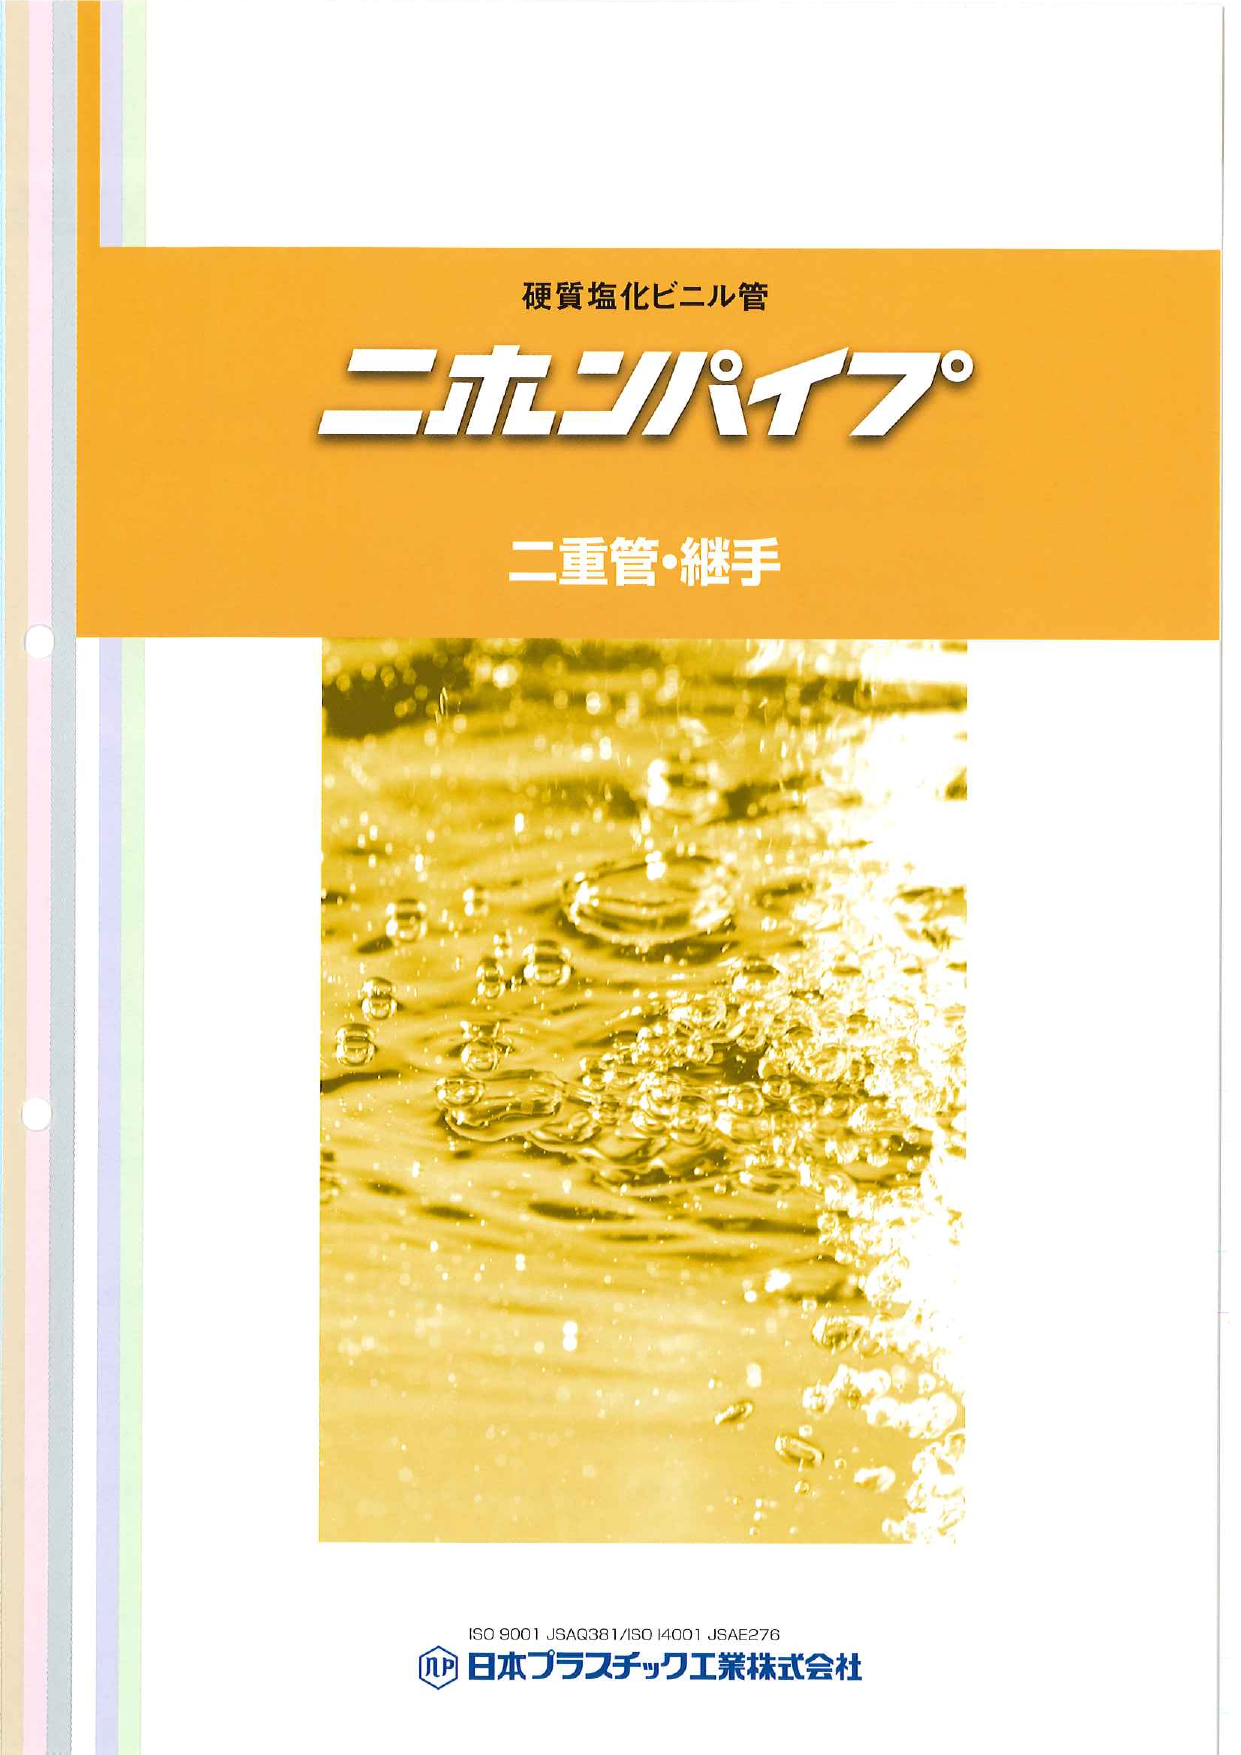 硬質塩化ビニル管 二重管 継手 ニホンパイプ 日本プラスチック工業株式会社 のカタログ無料ダウンロード 製造業向けカタログポータル Aperza Catalog アペルザカタログ